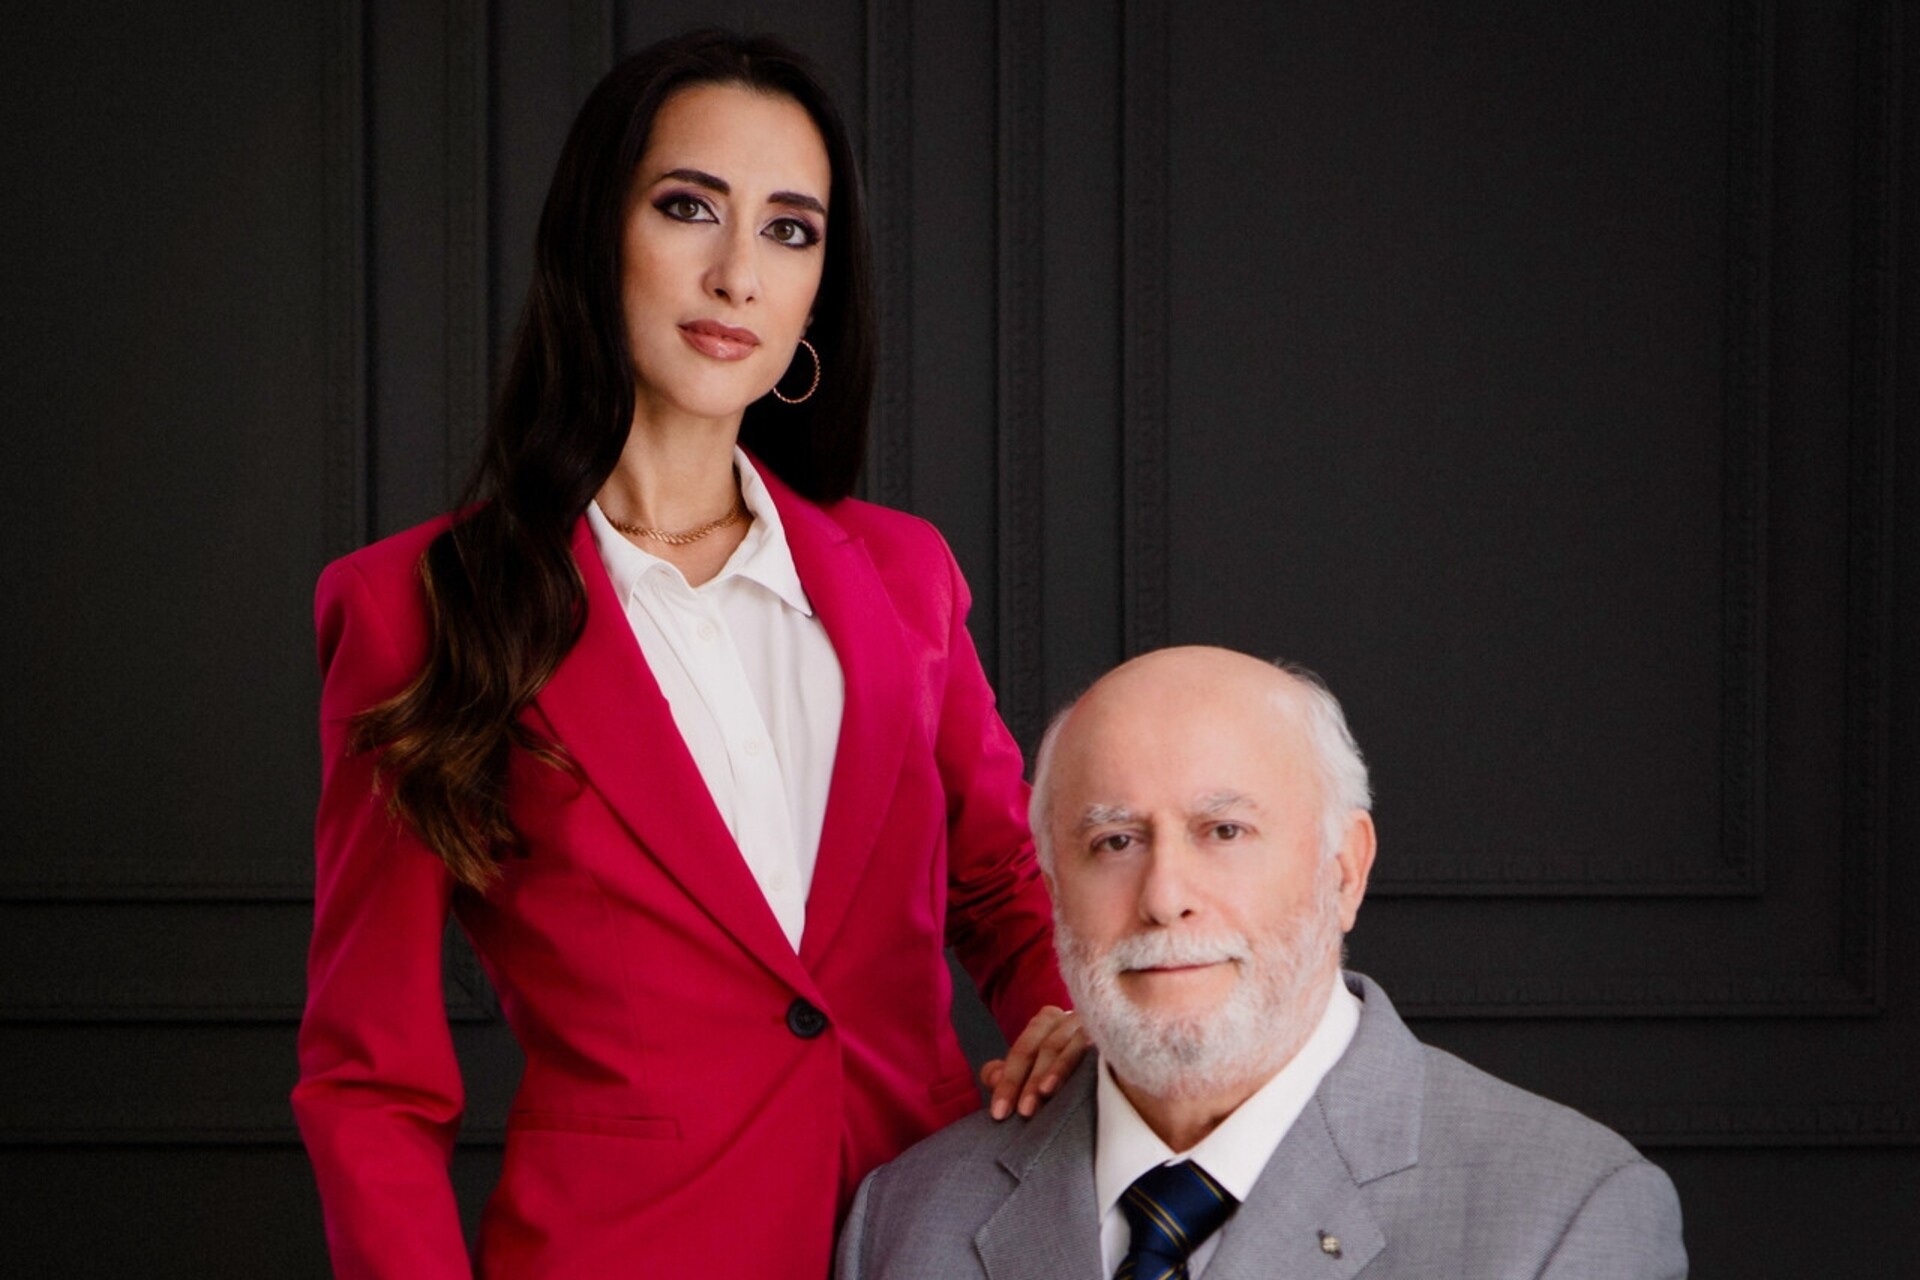 Η Eleonora Bafunno και ο πατέρας της Pasquale είναι οι ιδιοκτήτες του Bafunno Group με έδρα το Ticino